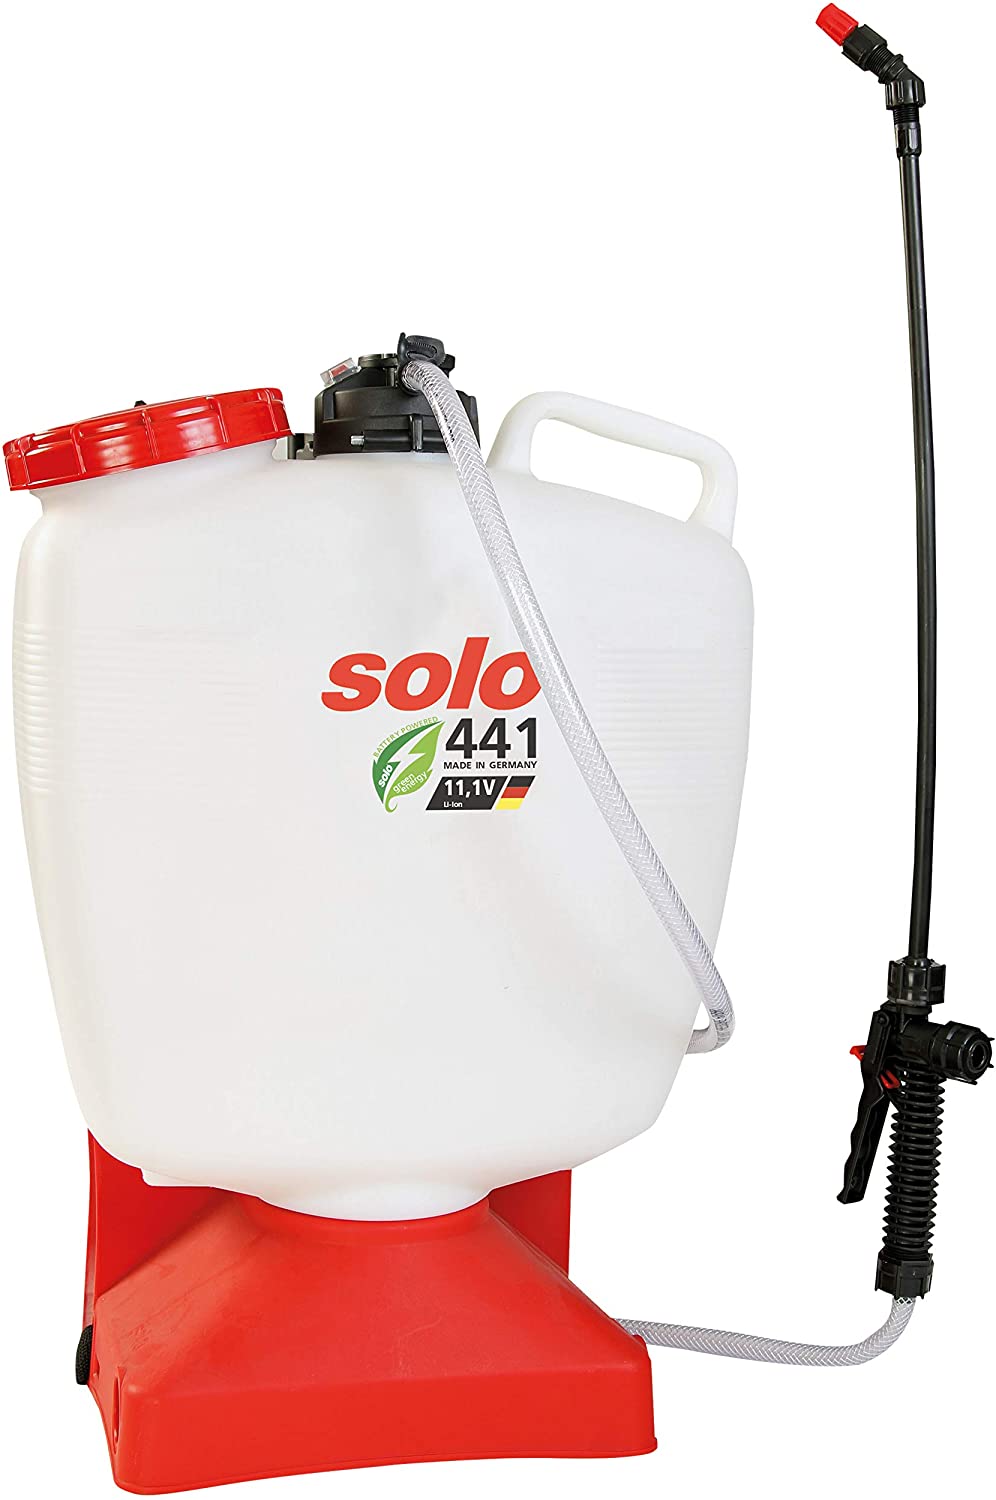 Pulvérisateur électrique Solo 441 16 litres